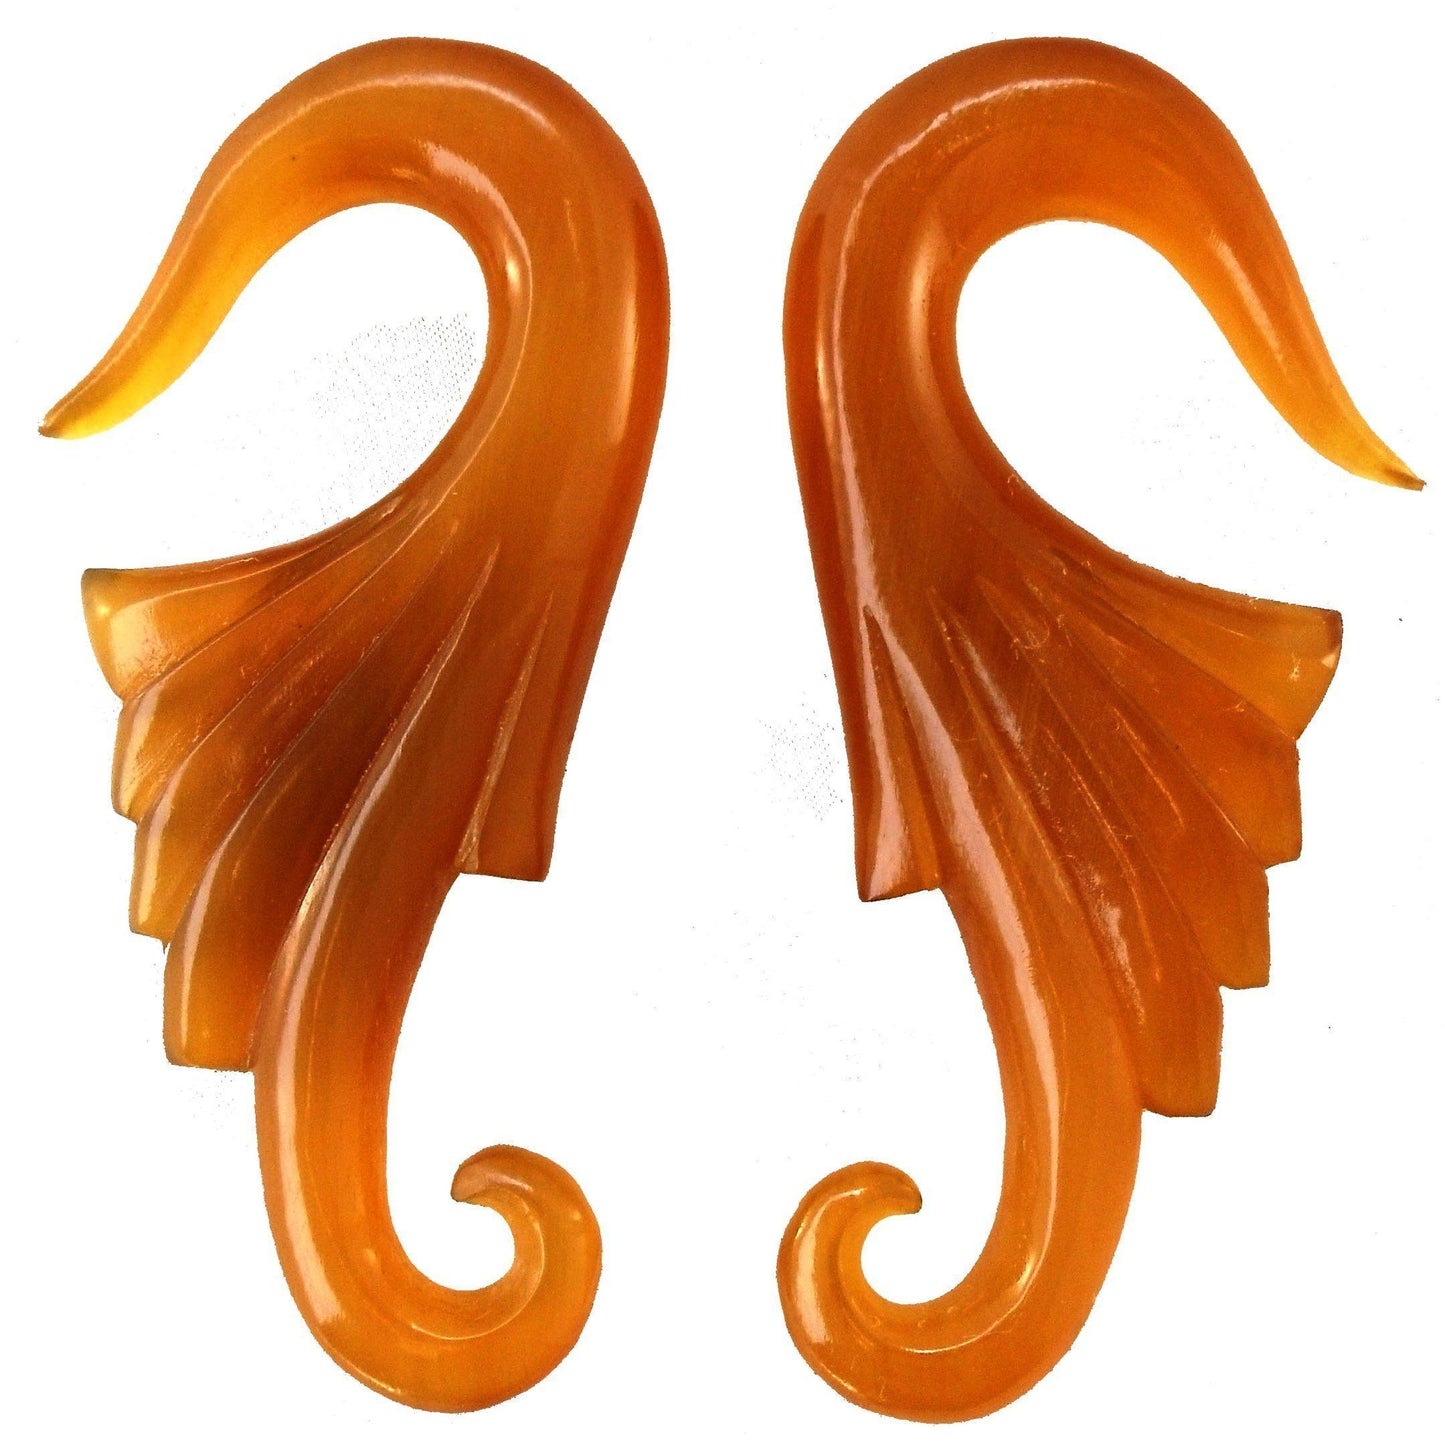 Gauge Earrings :|: Wings. Amber Horn 00g gauge earrings.